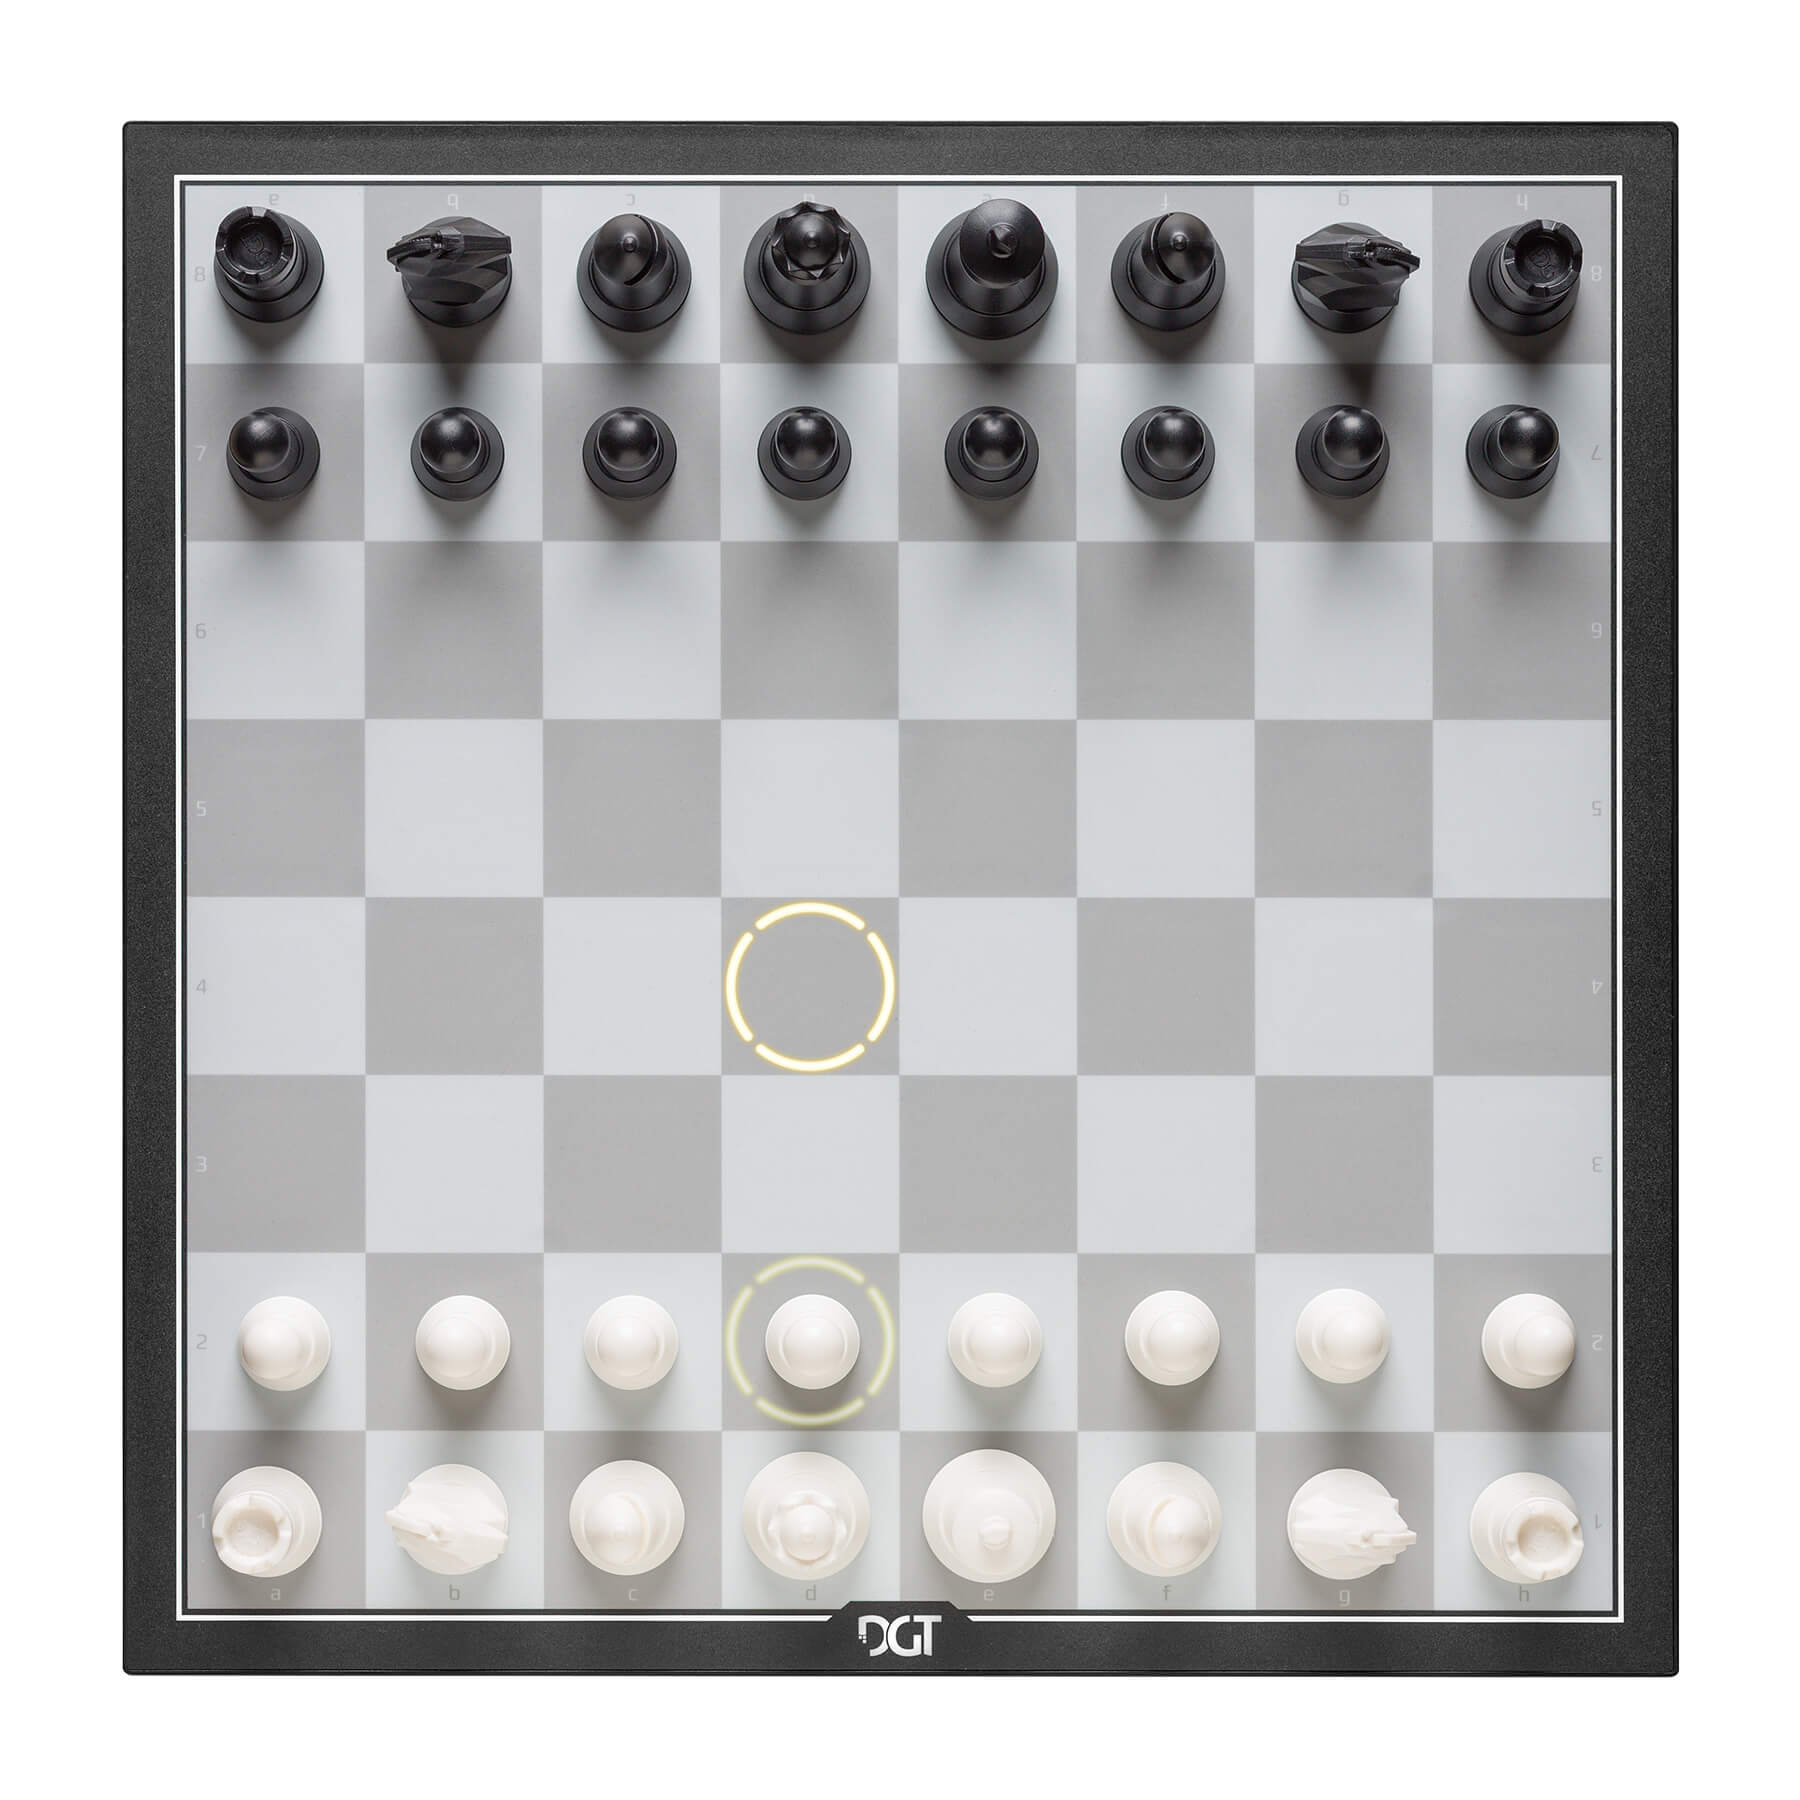 Acheter un échiquier électronique Archives - World Of Chess